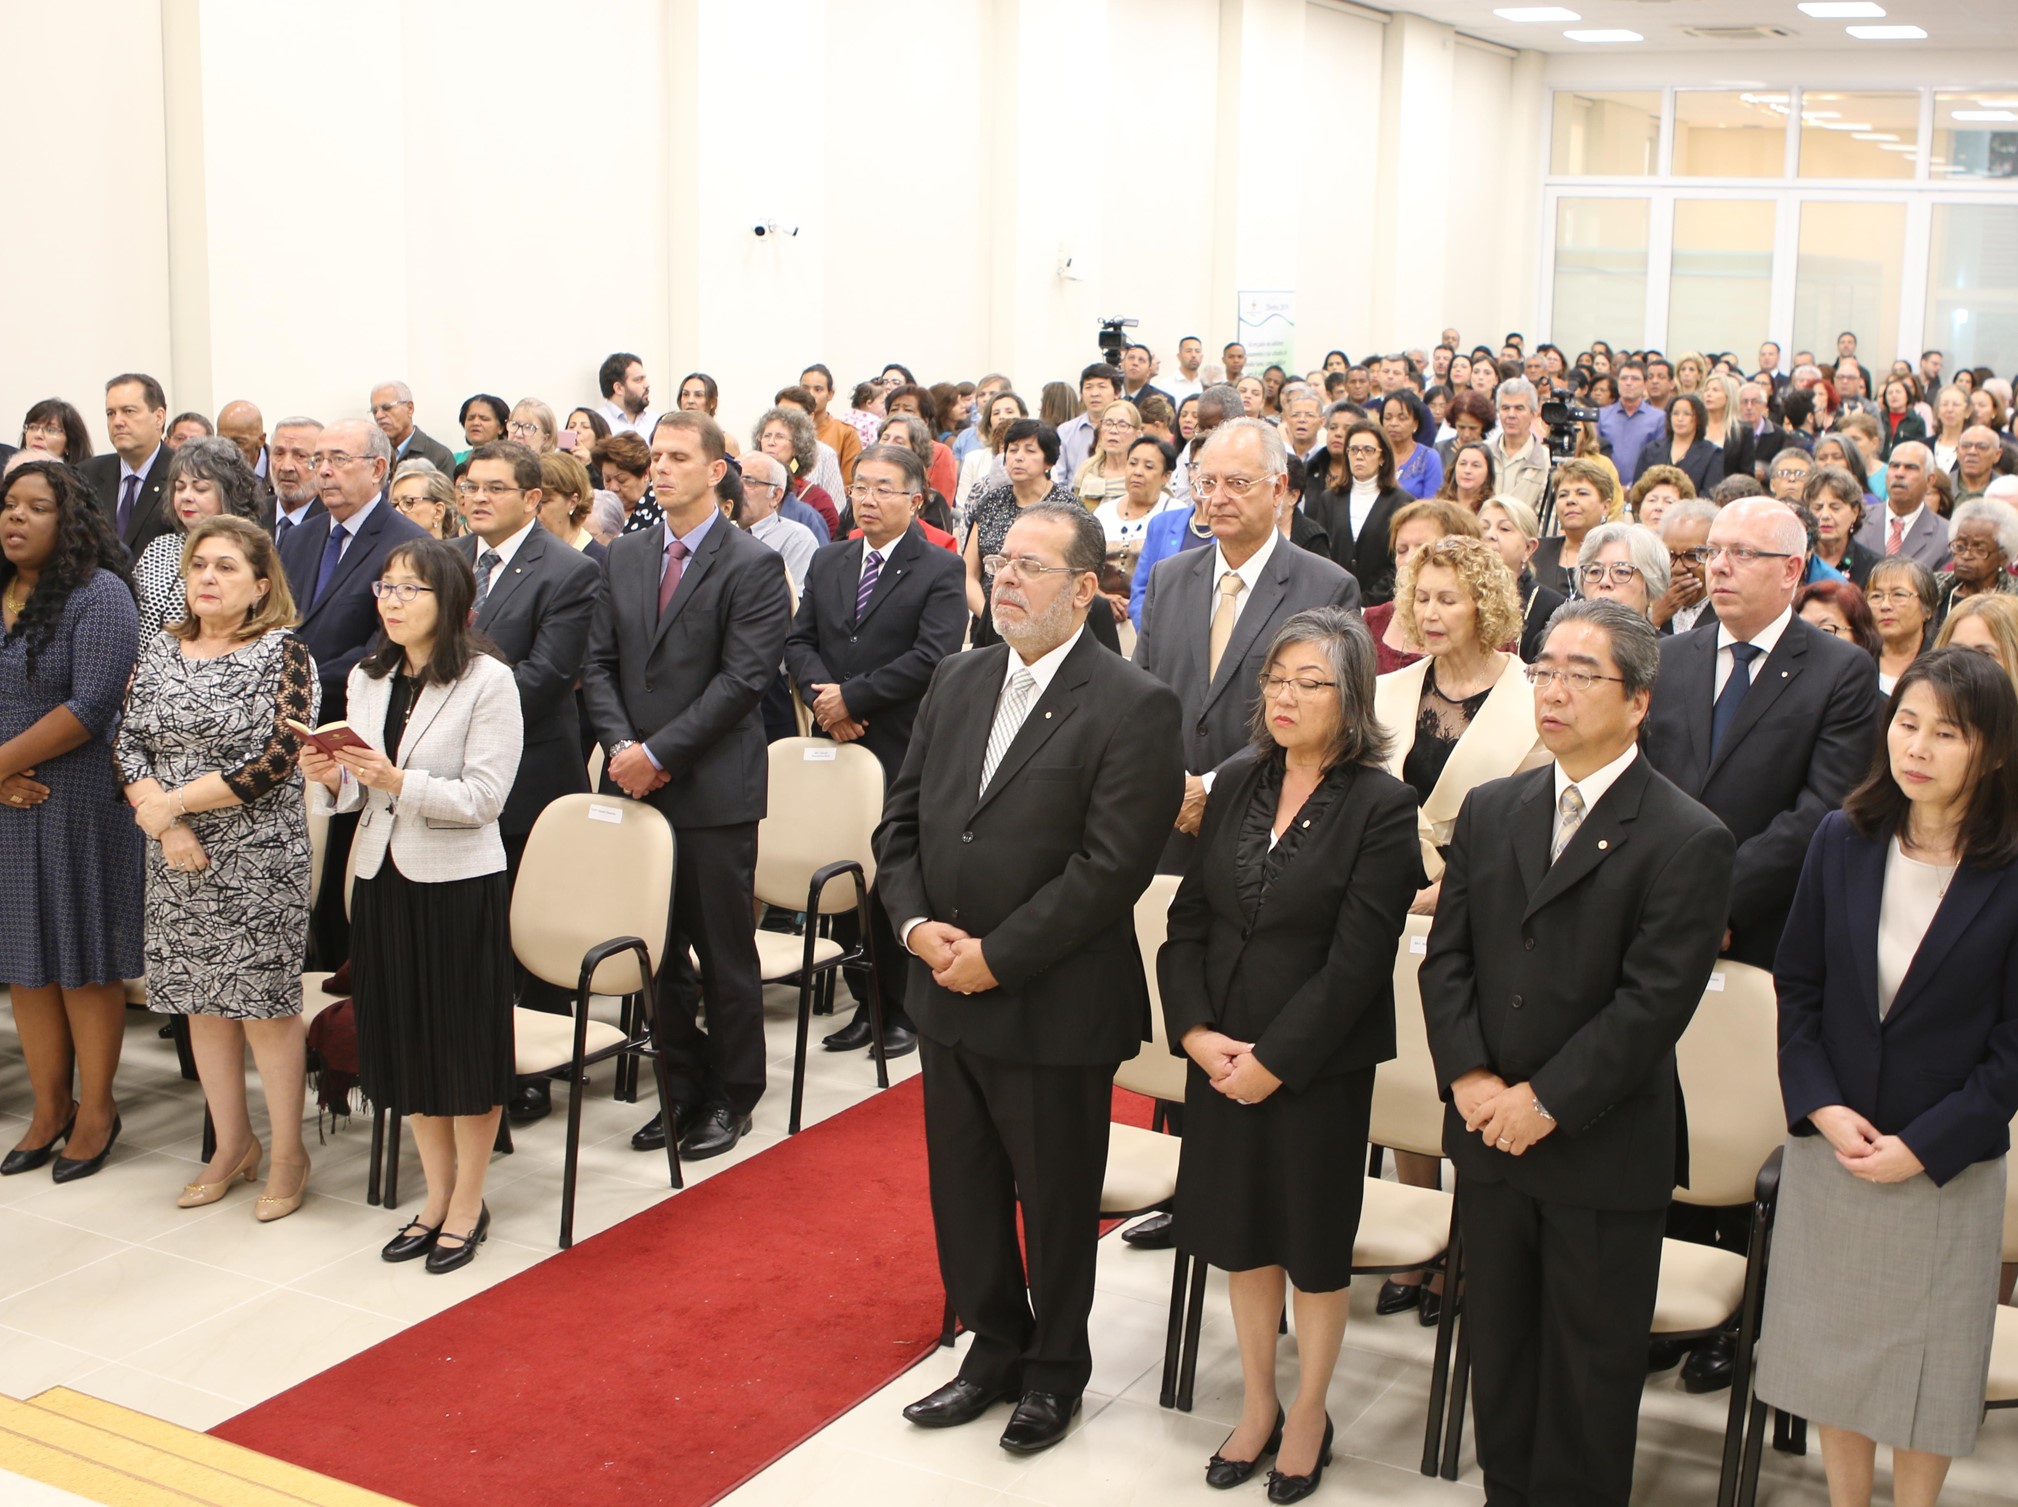 Cerimônia de reentronização da Igreja Pinheiros reúne 900 pessoas